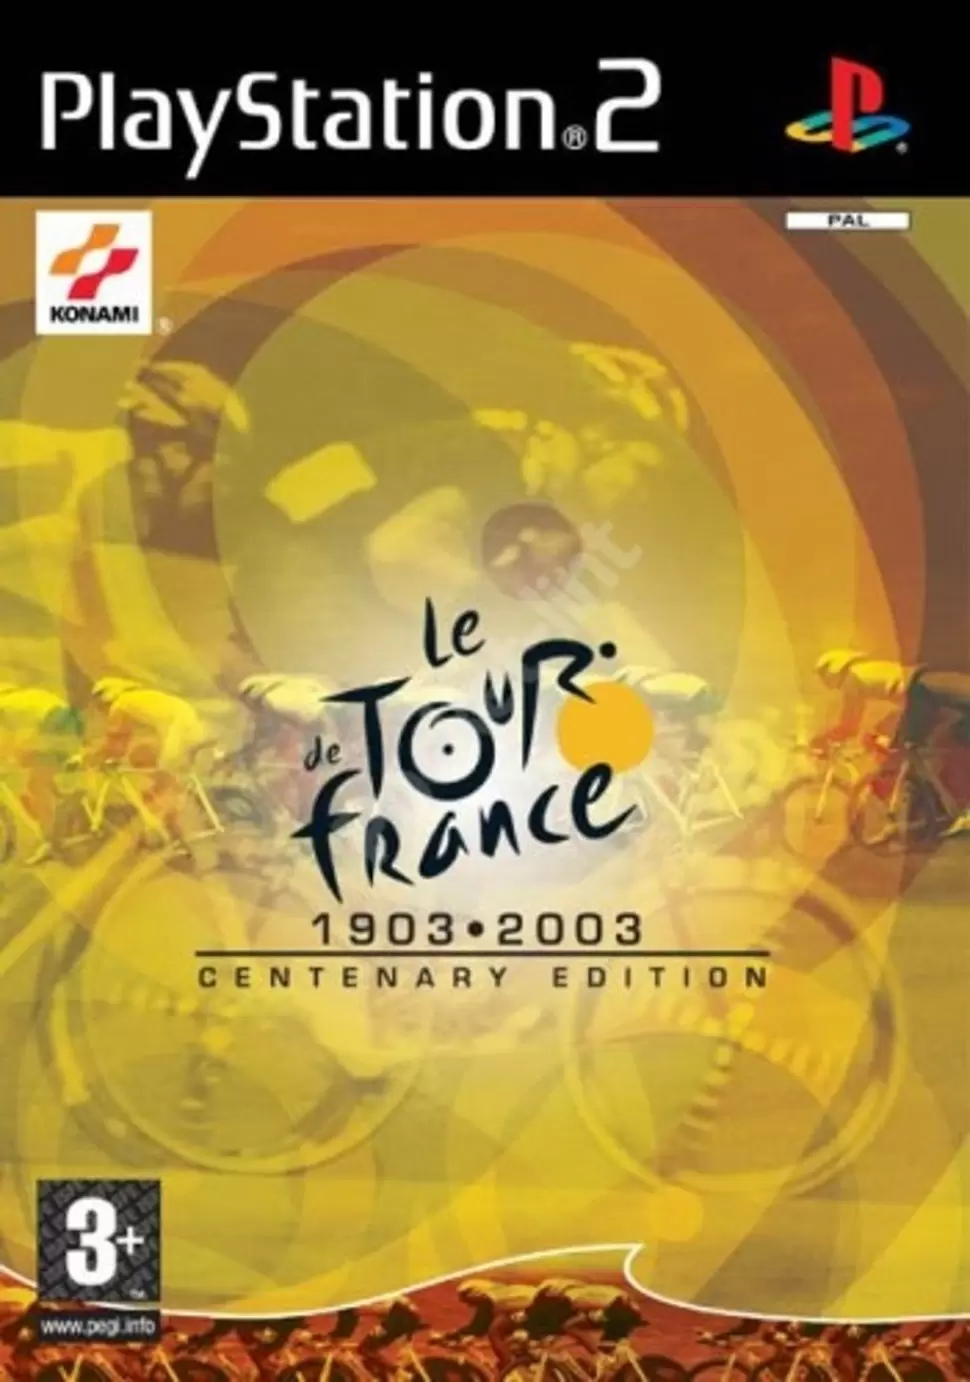 PS2 Games - Le Tour de France: Centenary Edition